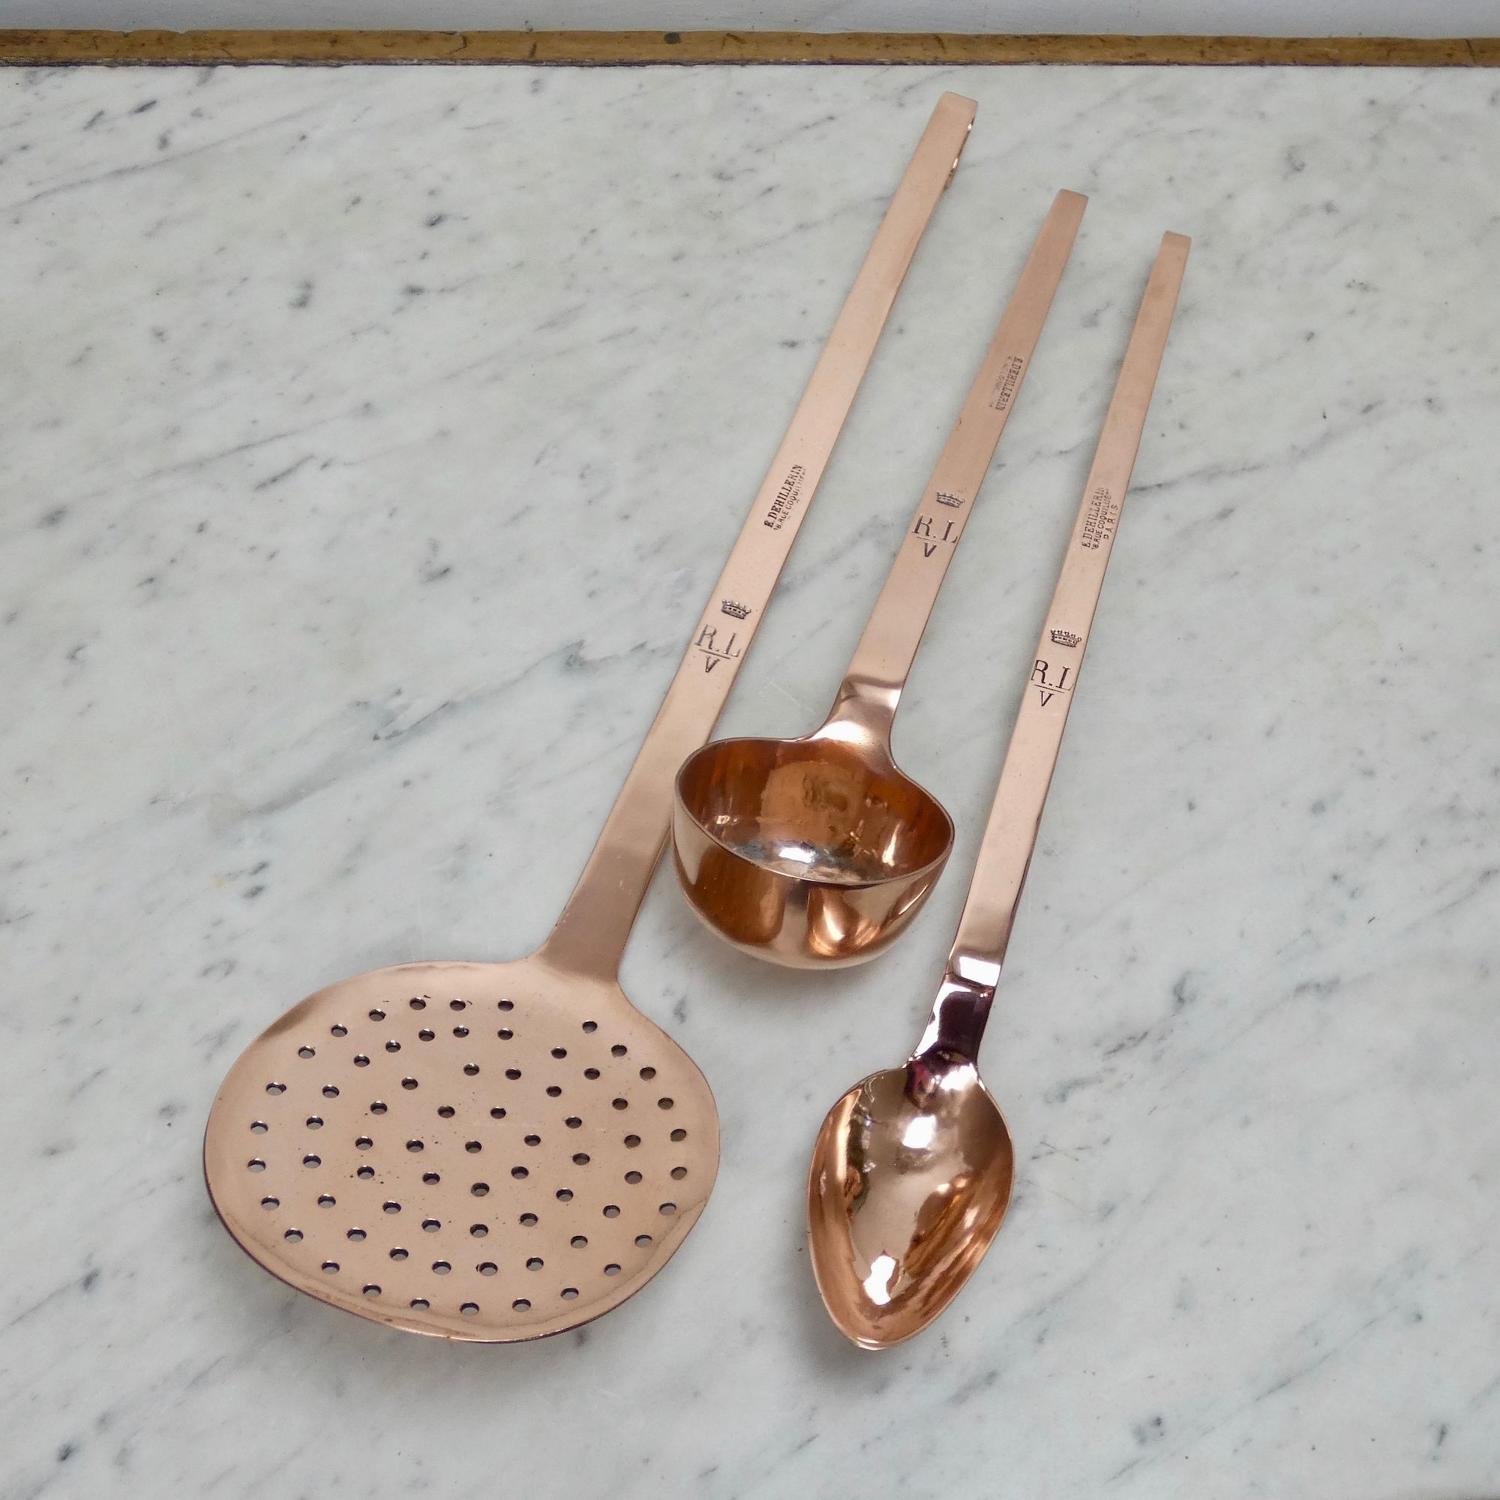 Crested kitchen utensils.